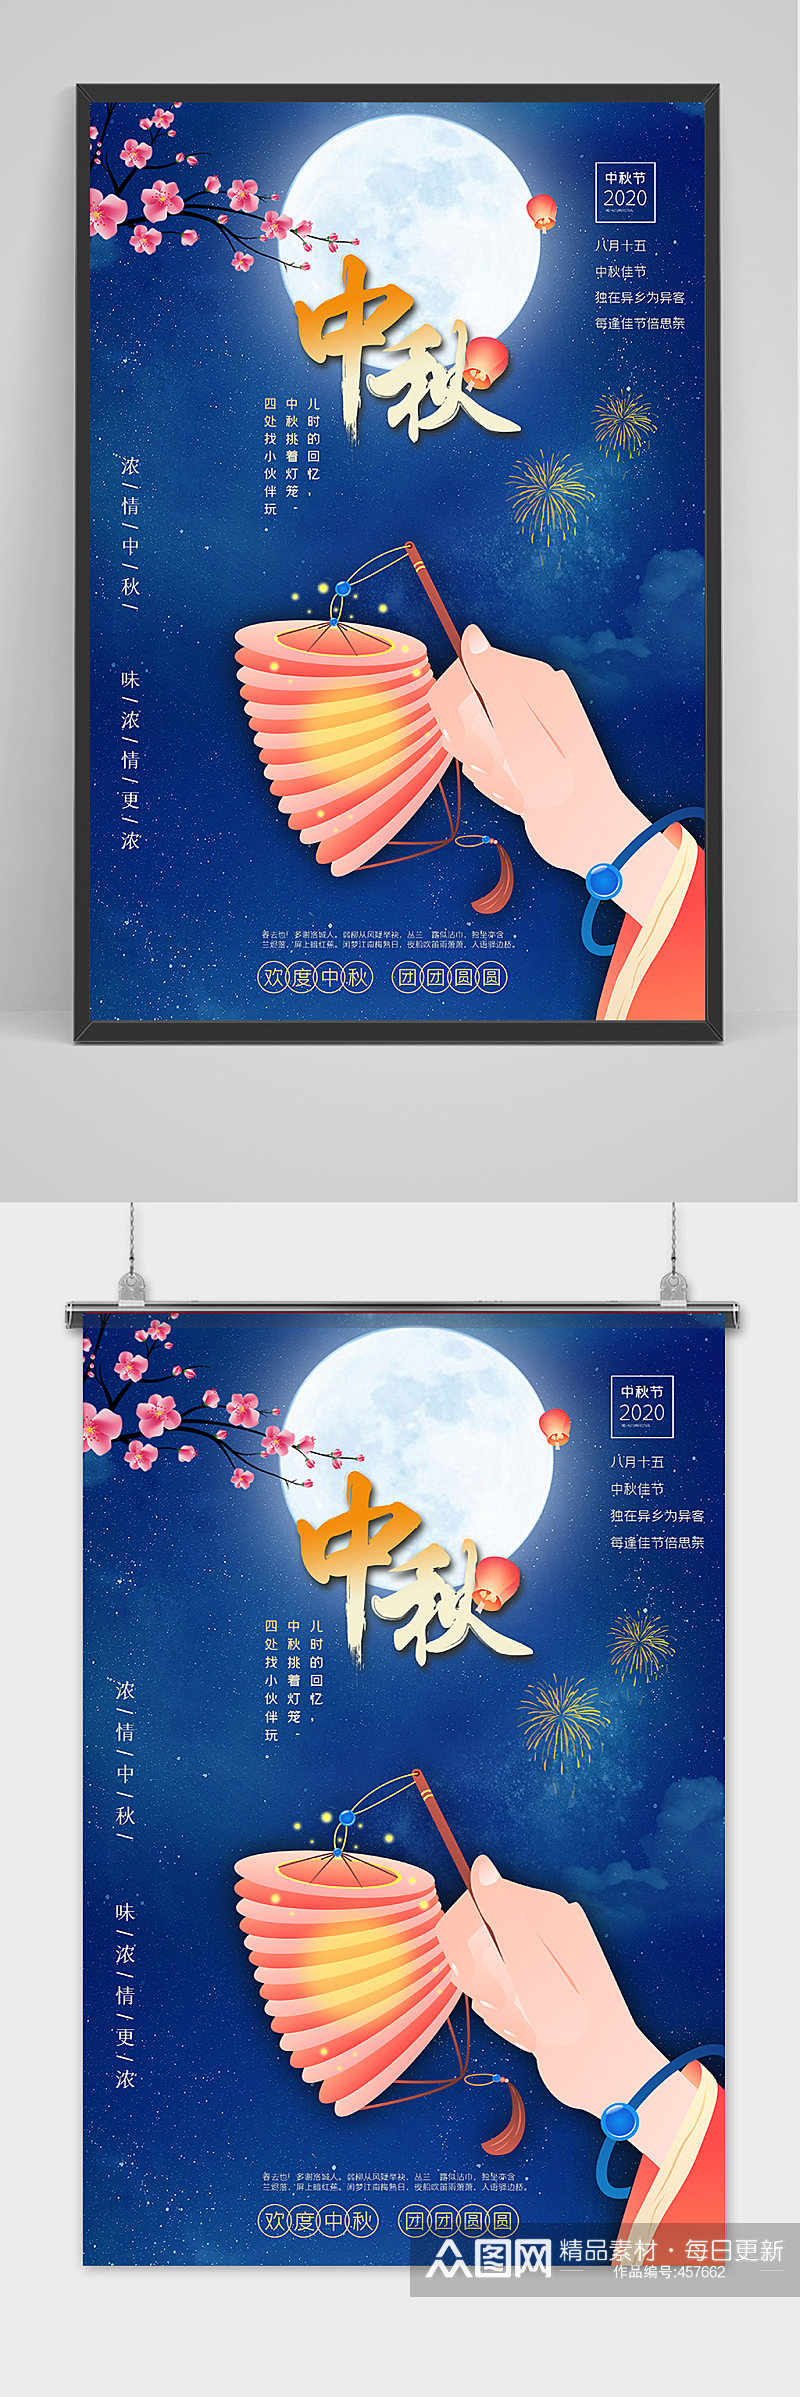 中国传统节日中秋佳节海报素材